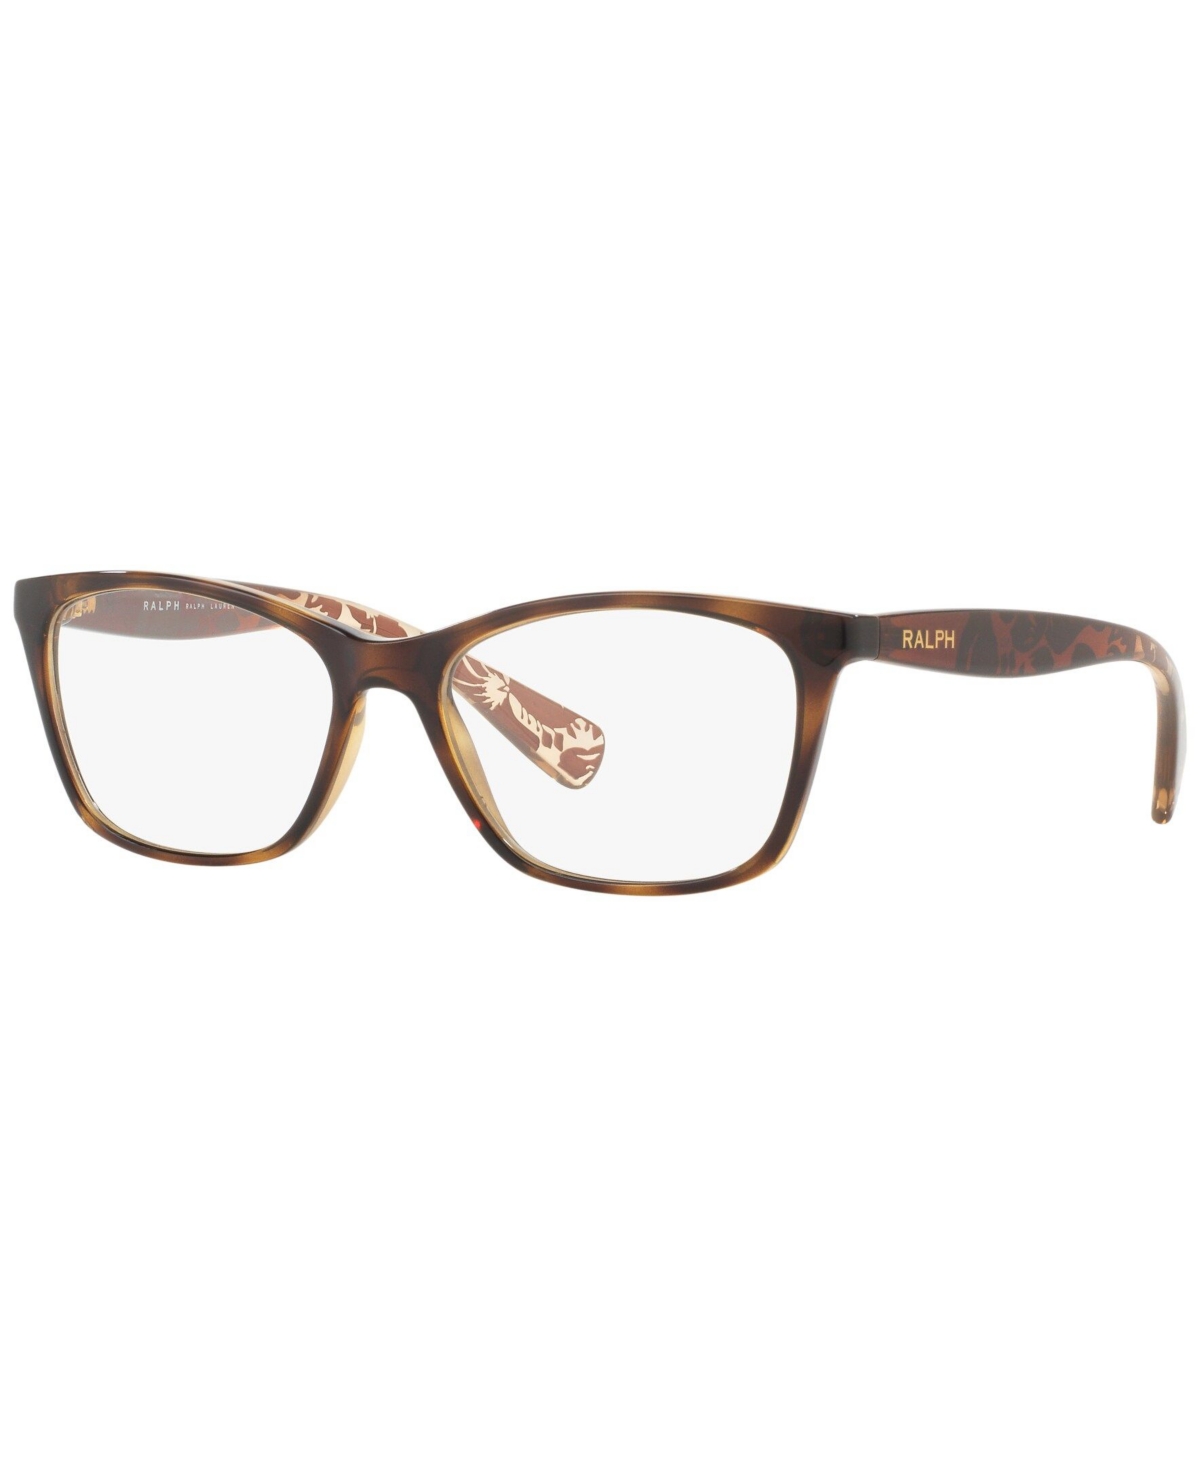 Ralph Lauren RA7071 Women's Cat Eye Eyeglasses - Dark Havan